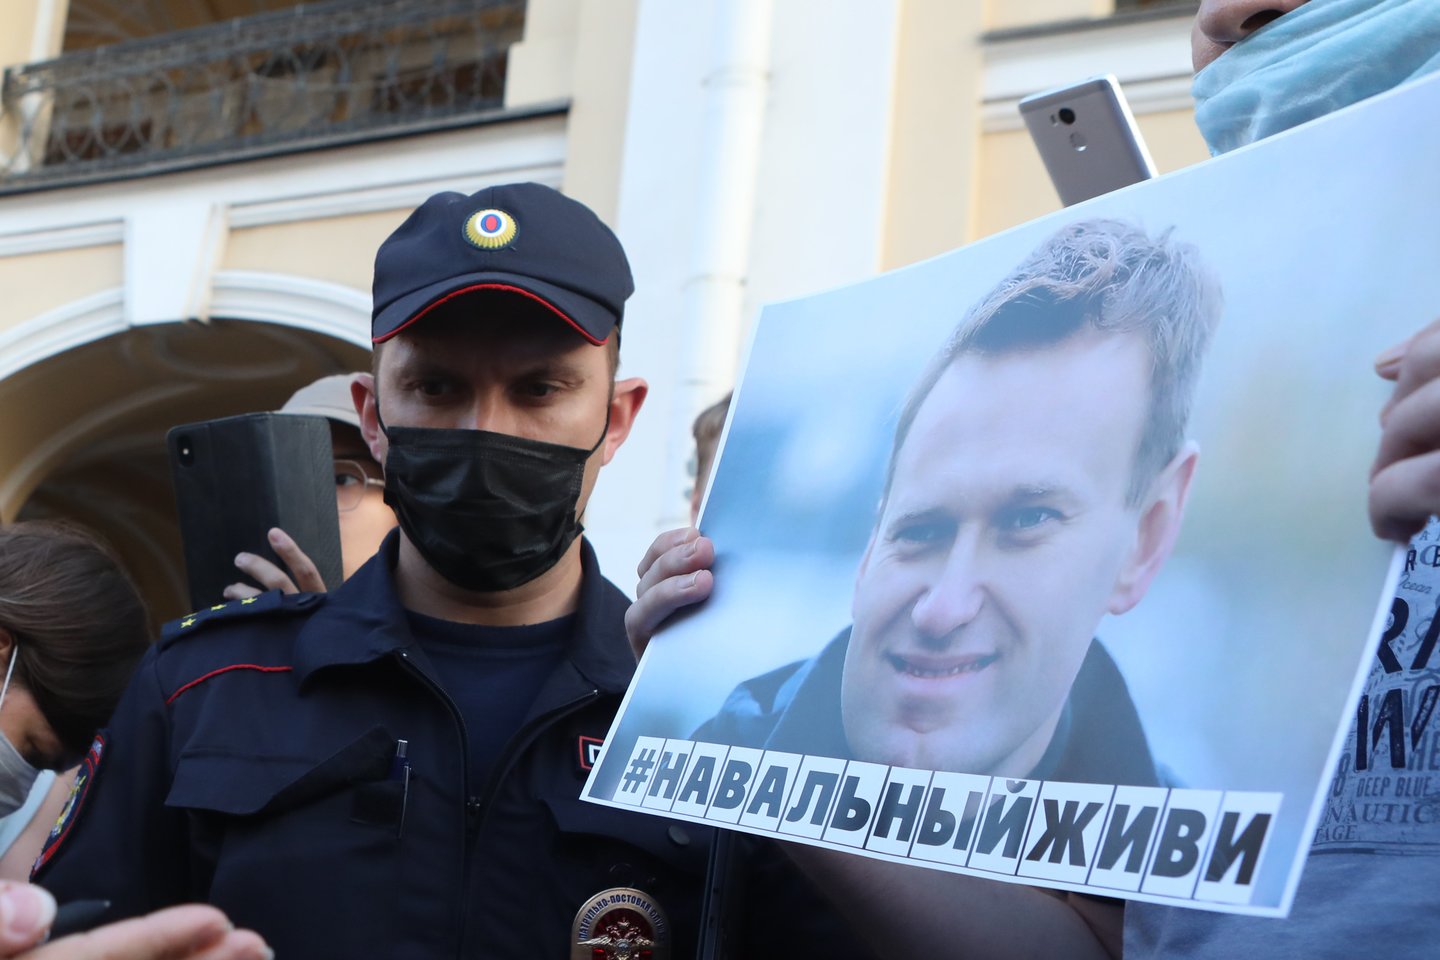 ​Jungtinė Karalystė sekmadienį pareiškė, kad Rusija turi atsakyti į „virtinę labai rimtų klausimų“ apie opozicijos lyderio Aleksejaus Navalno apnuodijimą, leisdama suprasti mananti, kad prie šio rezonansinio incidento tam tikru būdu galėjo prisidėti rusų valdžia.<br>TASS/Scanpix nuotr.